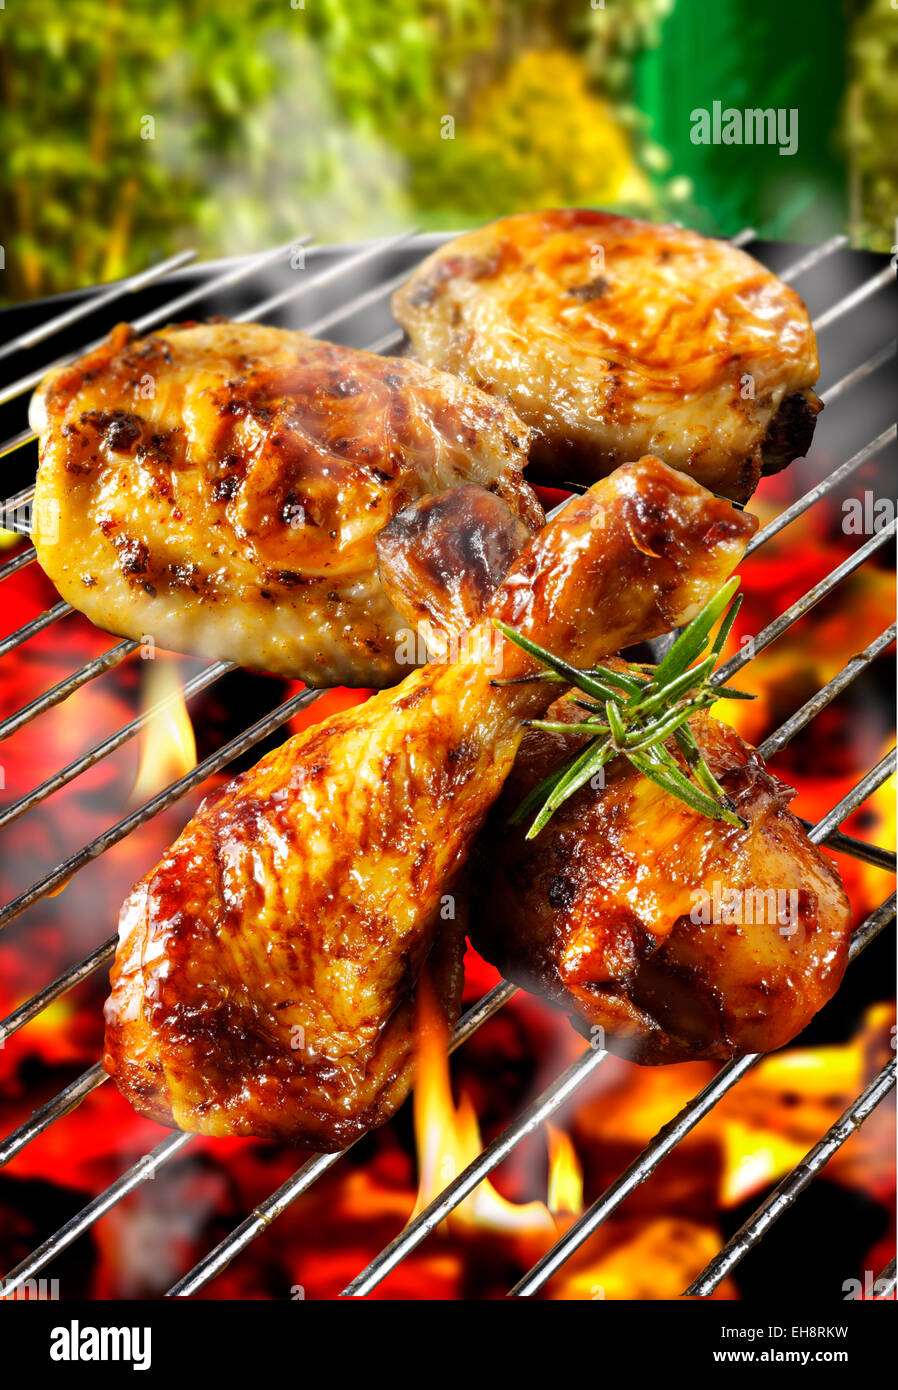 Los pedazos de pollo asado cocinar en una barbacoa en llamas Foto de stock